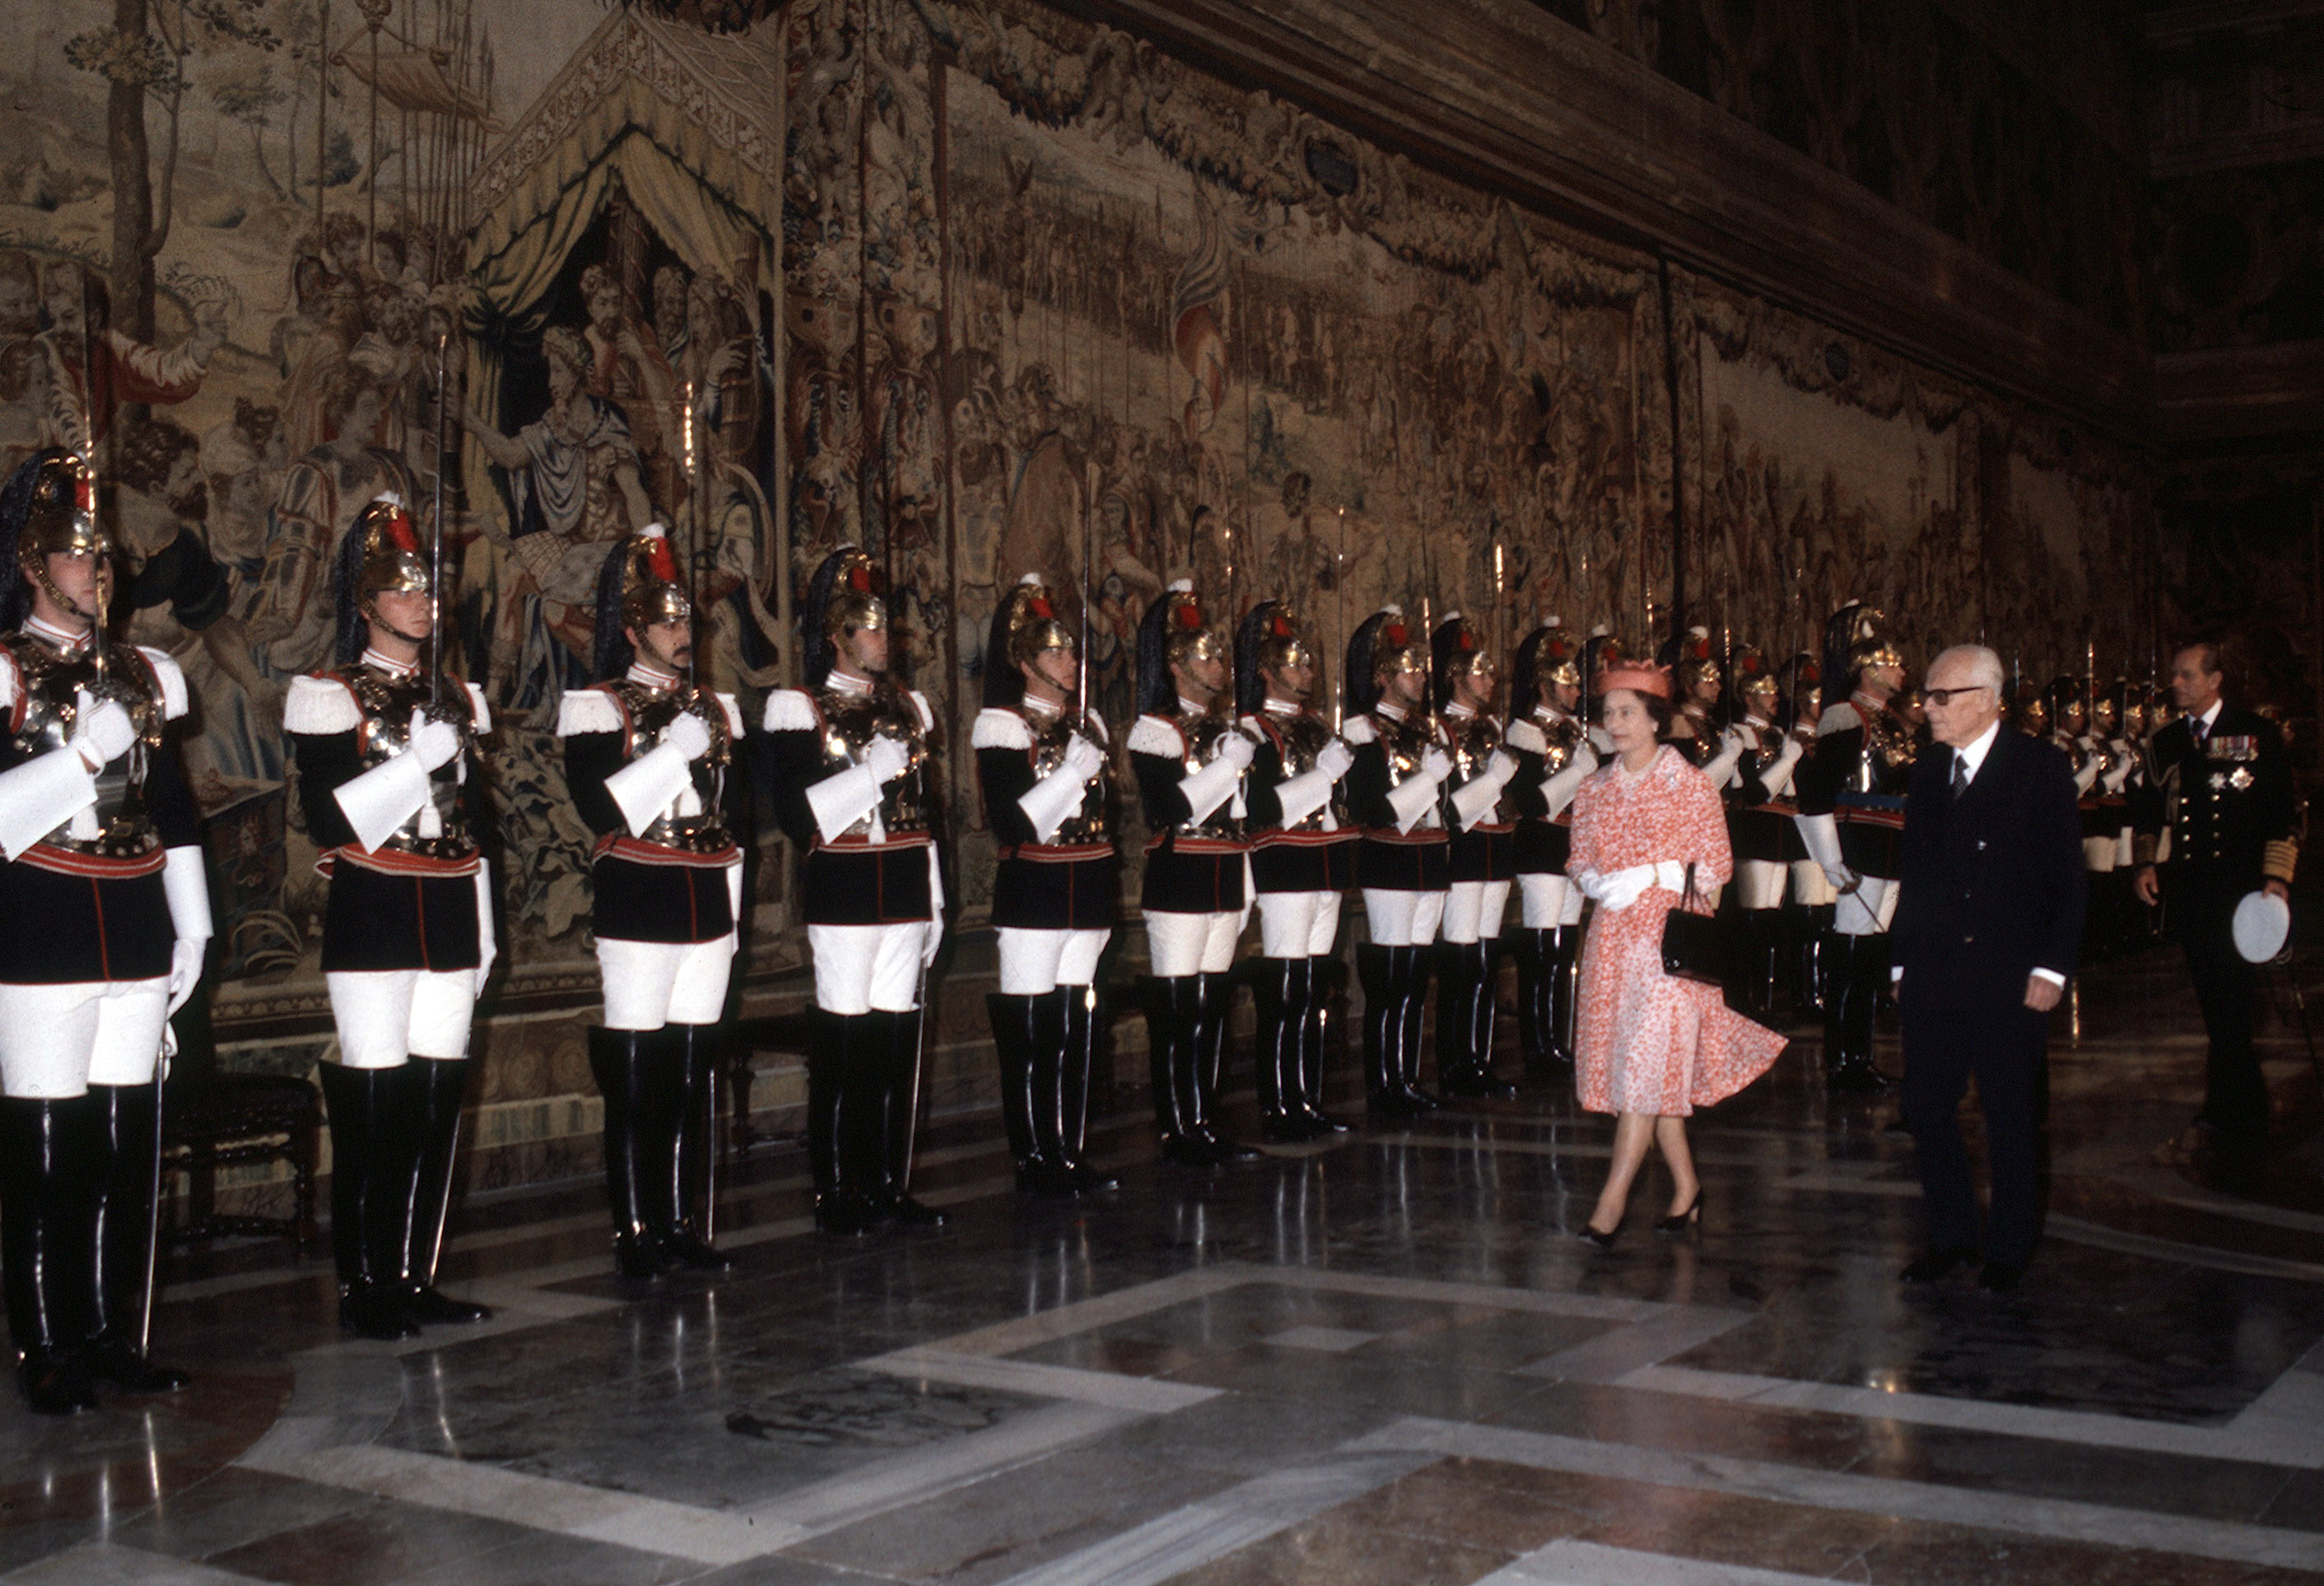 Pertini con la Regina Elisabetta, durante una sua visita al Quirinale nel 1980